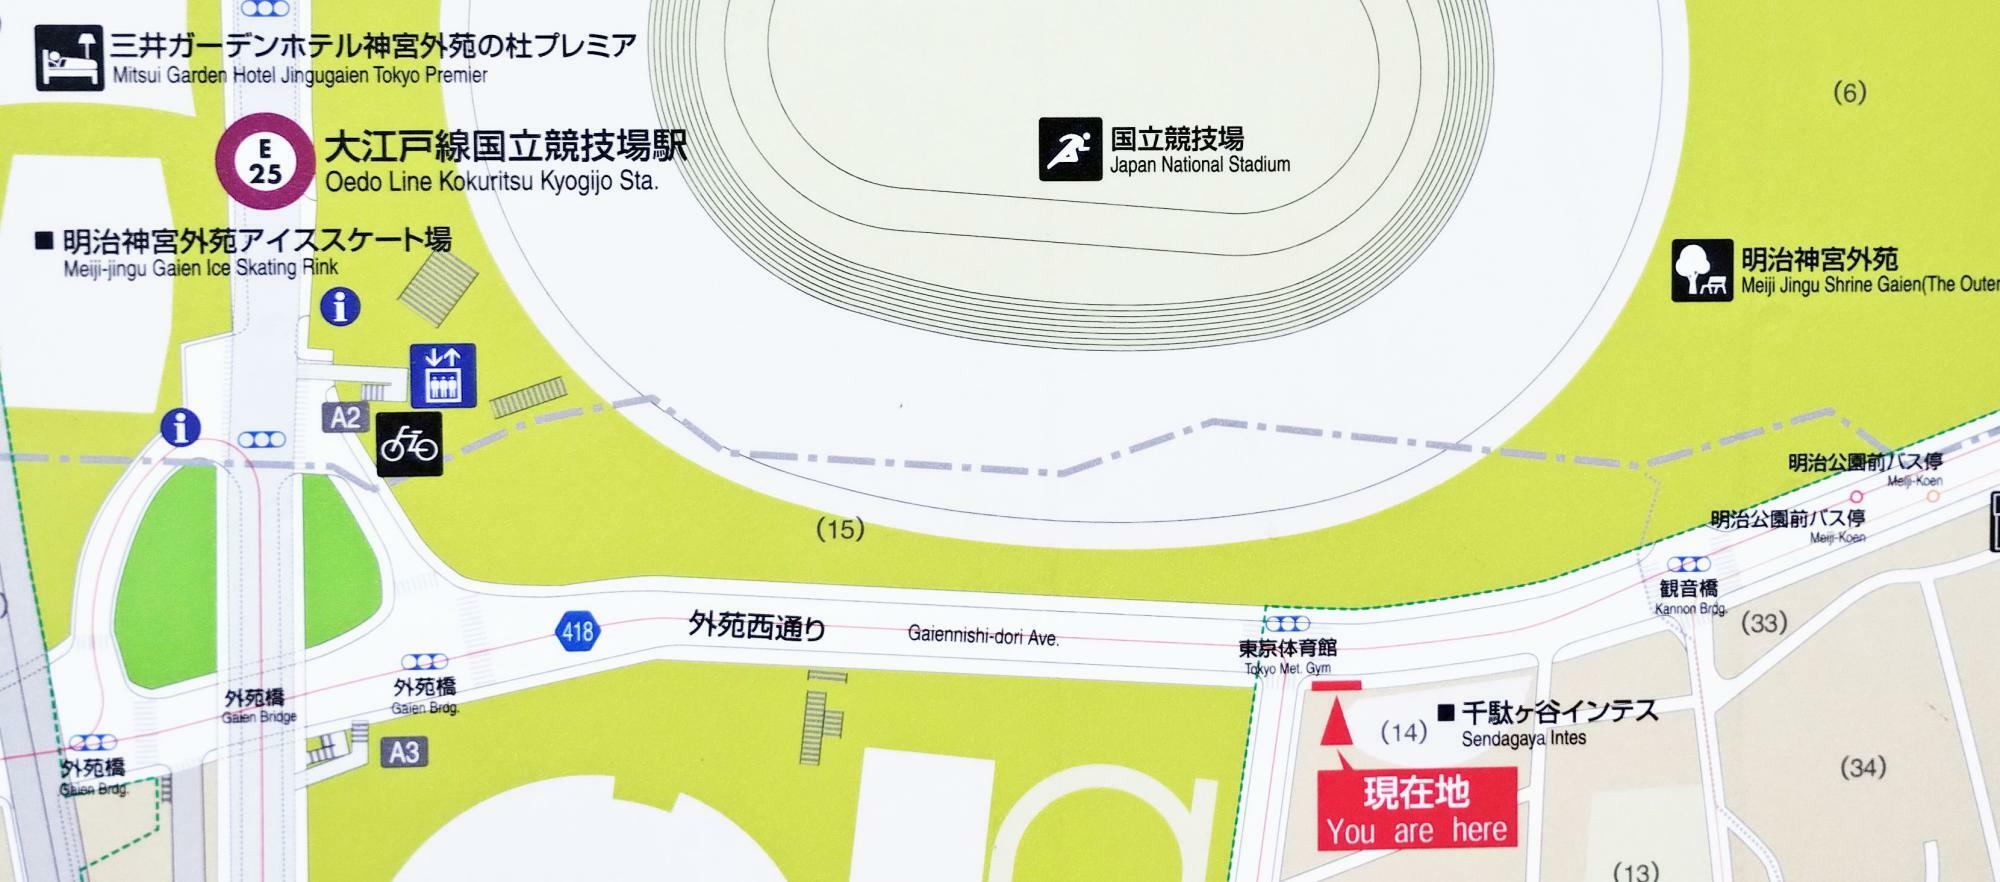 図の中央の点線より下が渋谷区、上が新宿区